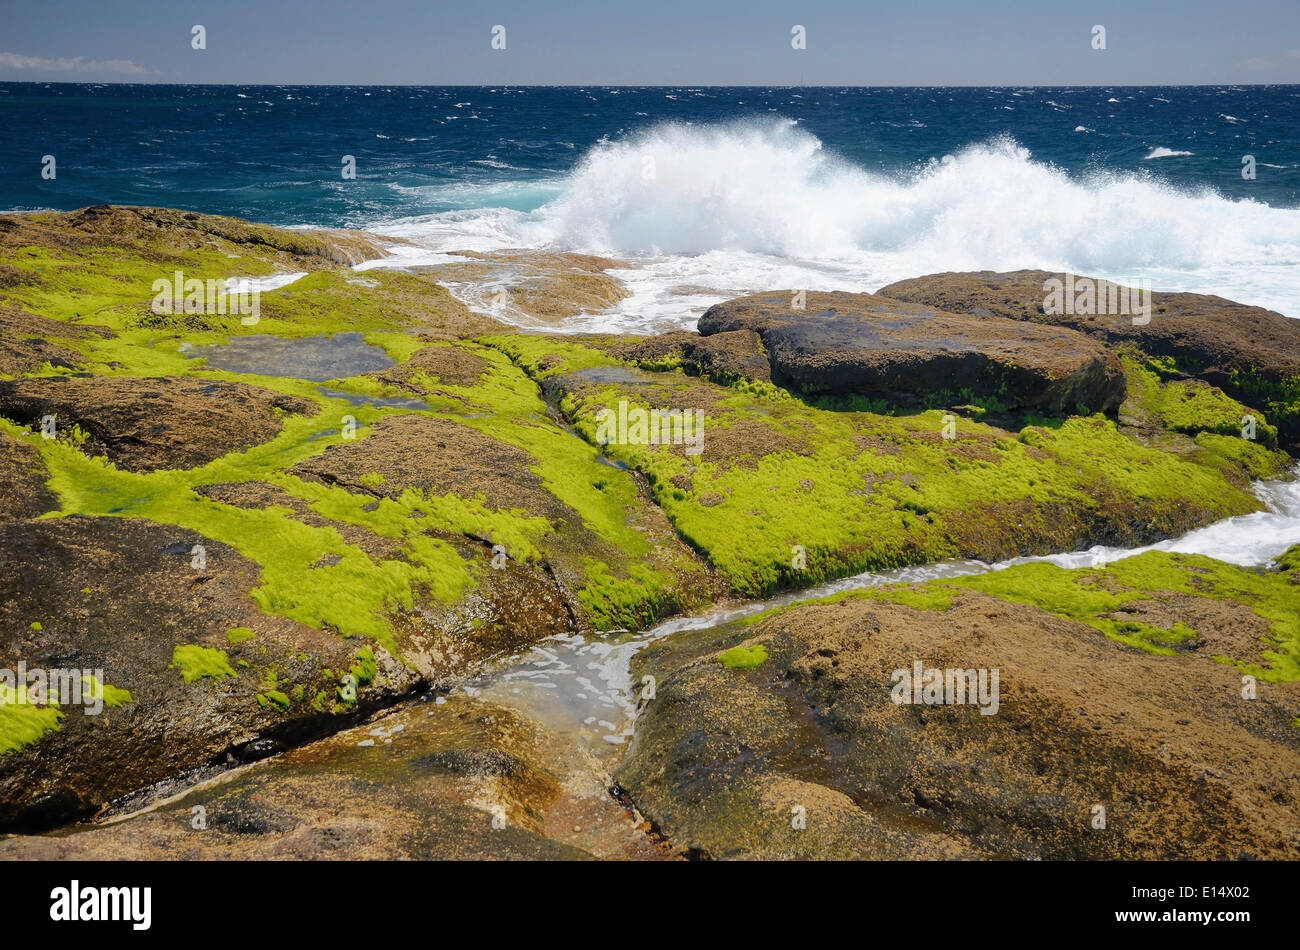 Surfen Sie auf Lavafelsen bedeckt in Grünalgen, Playa Paraiso, Adeje, Teneriffa, Kanarische Inseln, Spanien Stockfoto